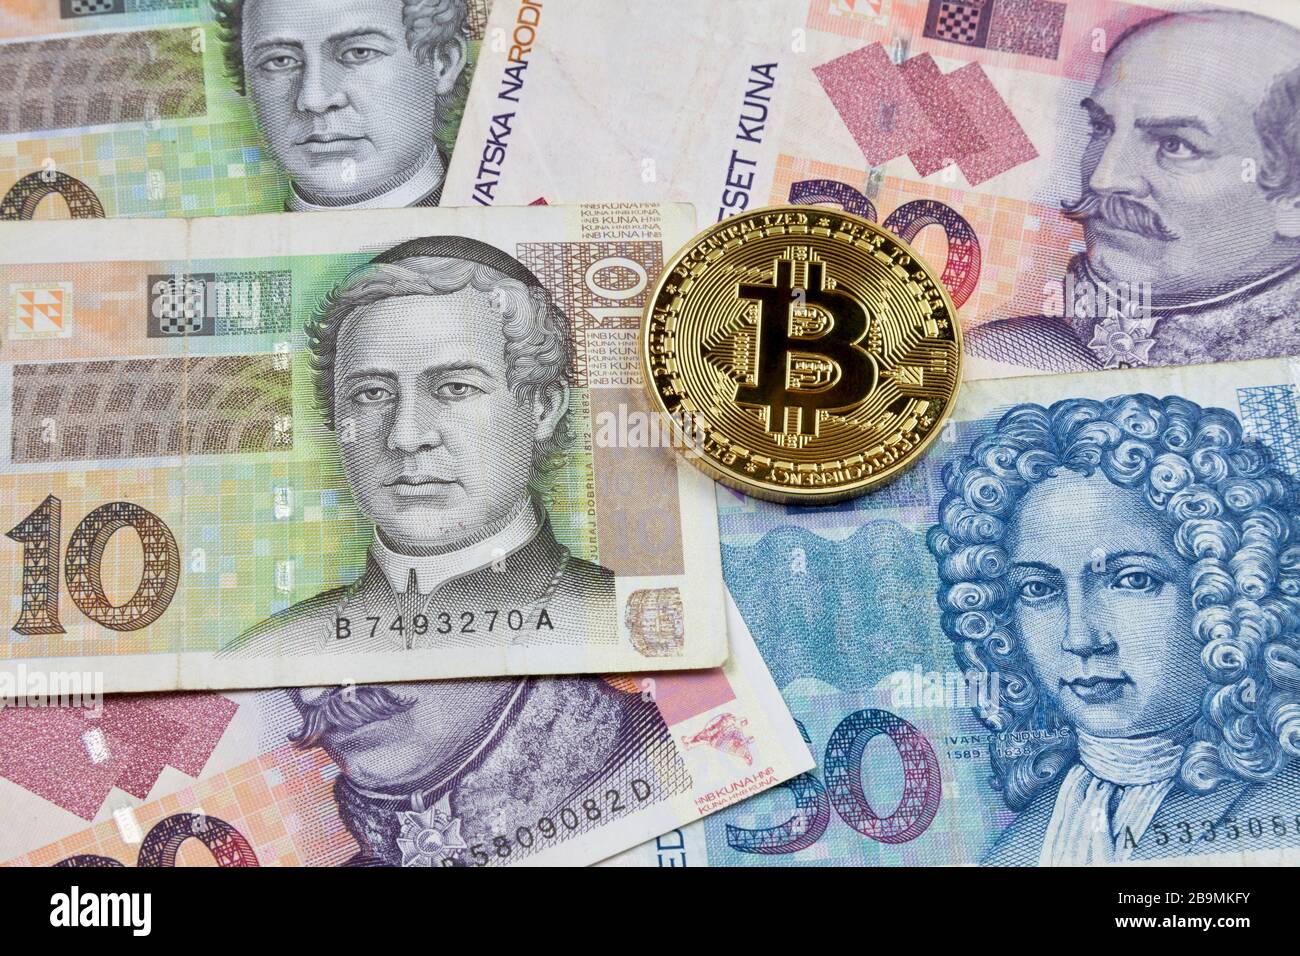 Nahaufnahme einer goldenen Bitcoin-Münze auf einem Stapel kroatischer Kuna-Banknoten. Stockfoto